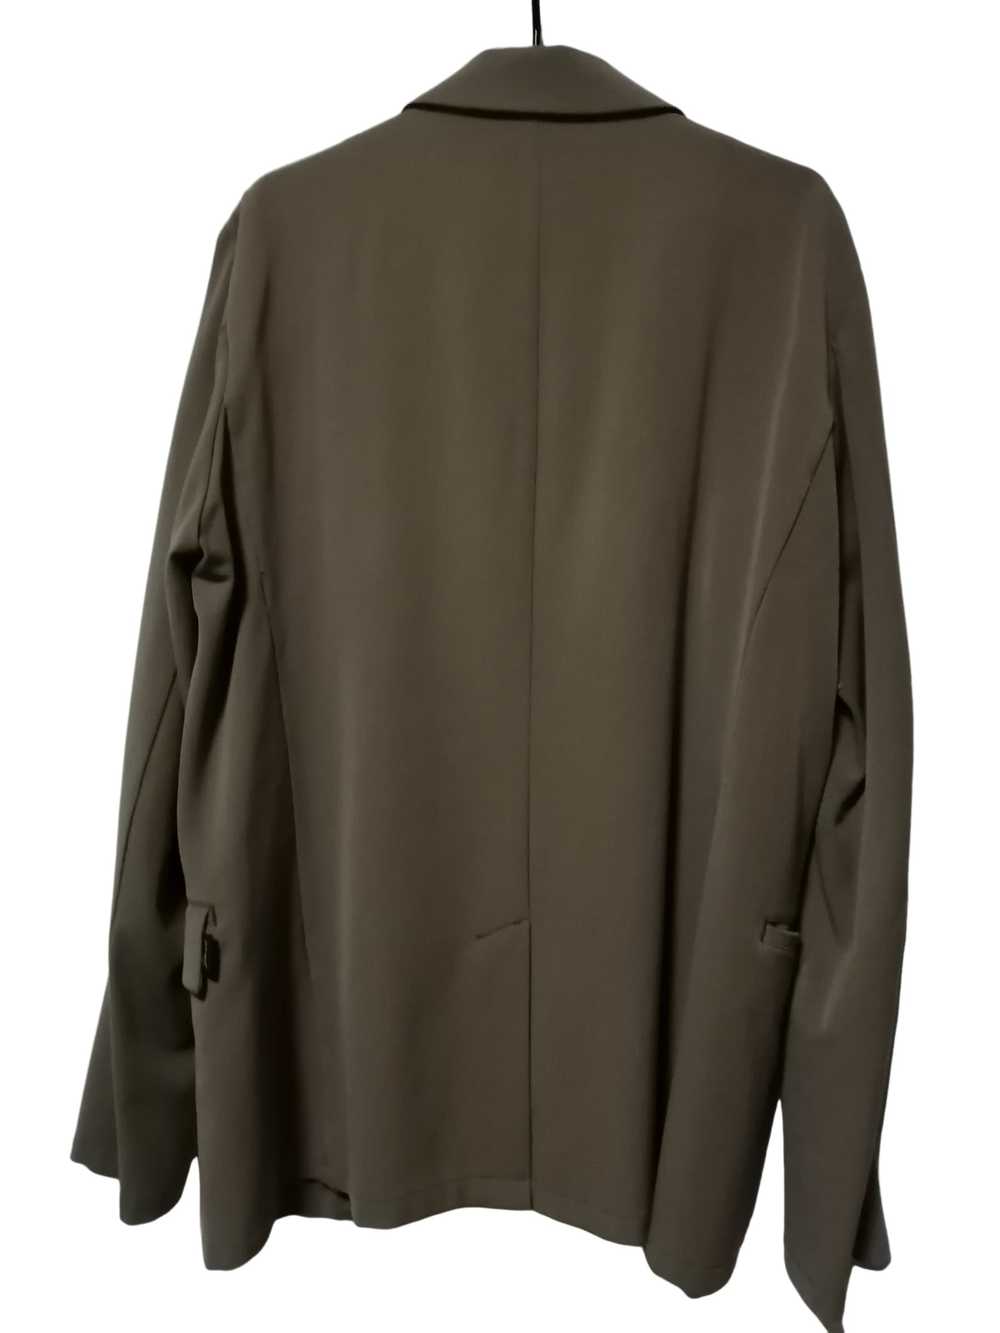 John Bull John Bull jacket L size japan polyester… - image 6